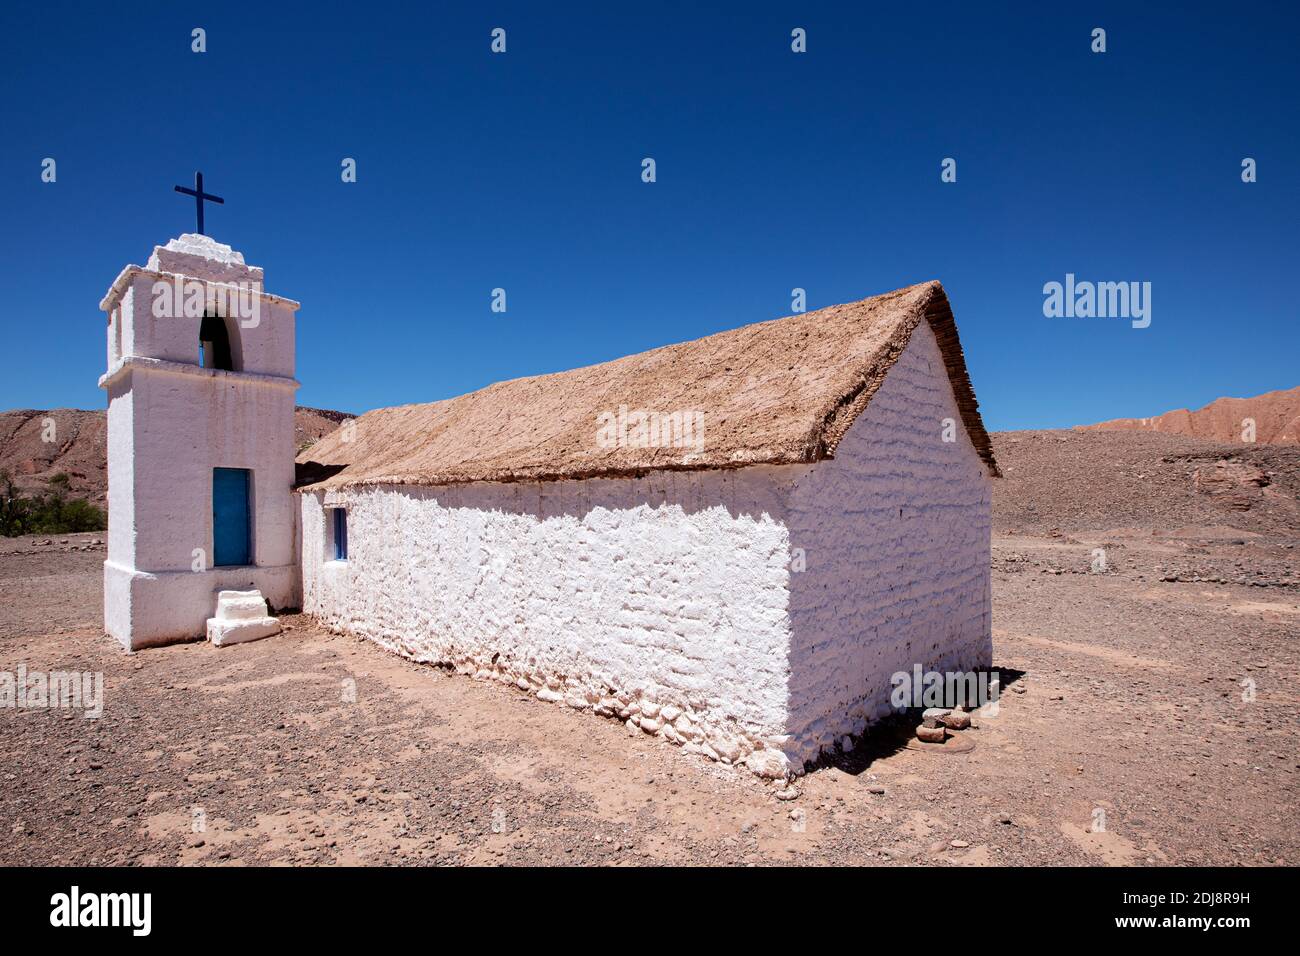 The small Capilla de San Isidro, Catarpe, Antofagasta Region, Chile. Stock Photo